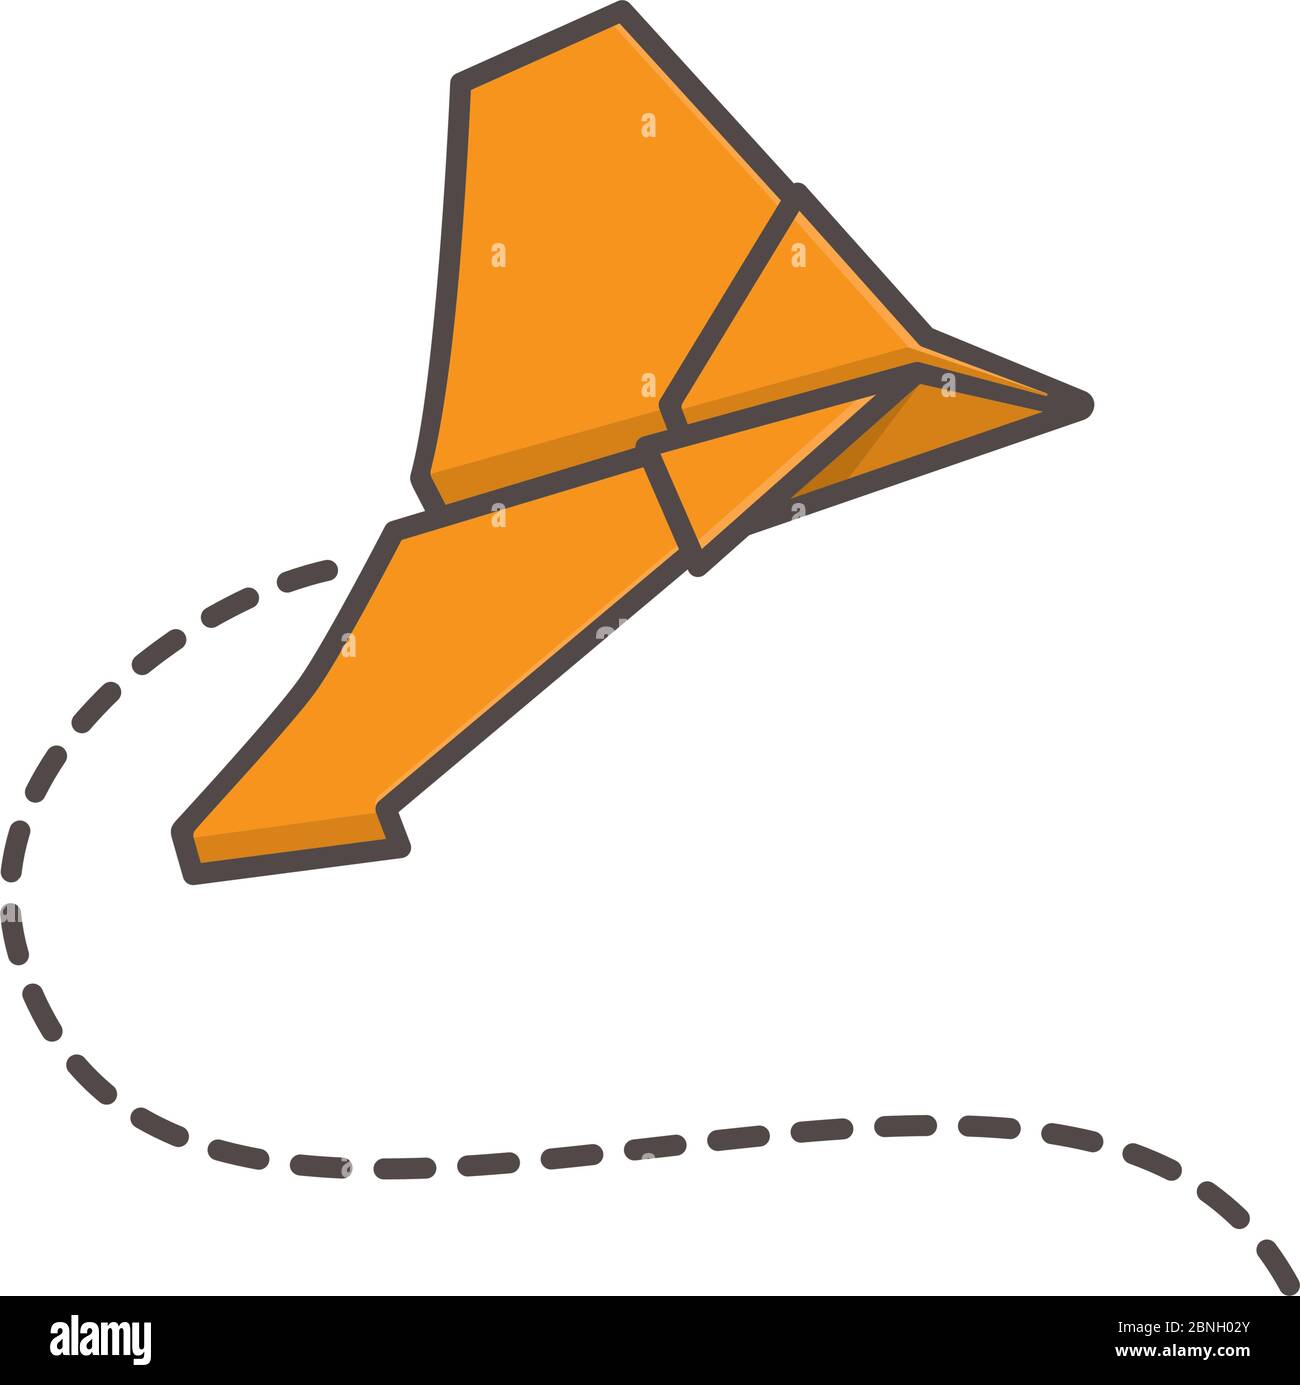 Illustration vectorielle isolée d'un avion en papier orange pour la Journée de l'avion en papier le 26 mai. Symbole jouet simple et bon marché Illustration de Vecteur